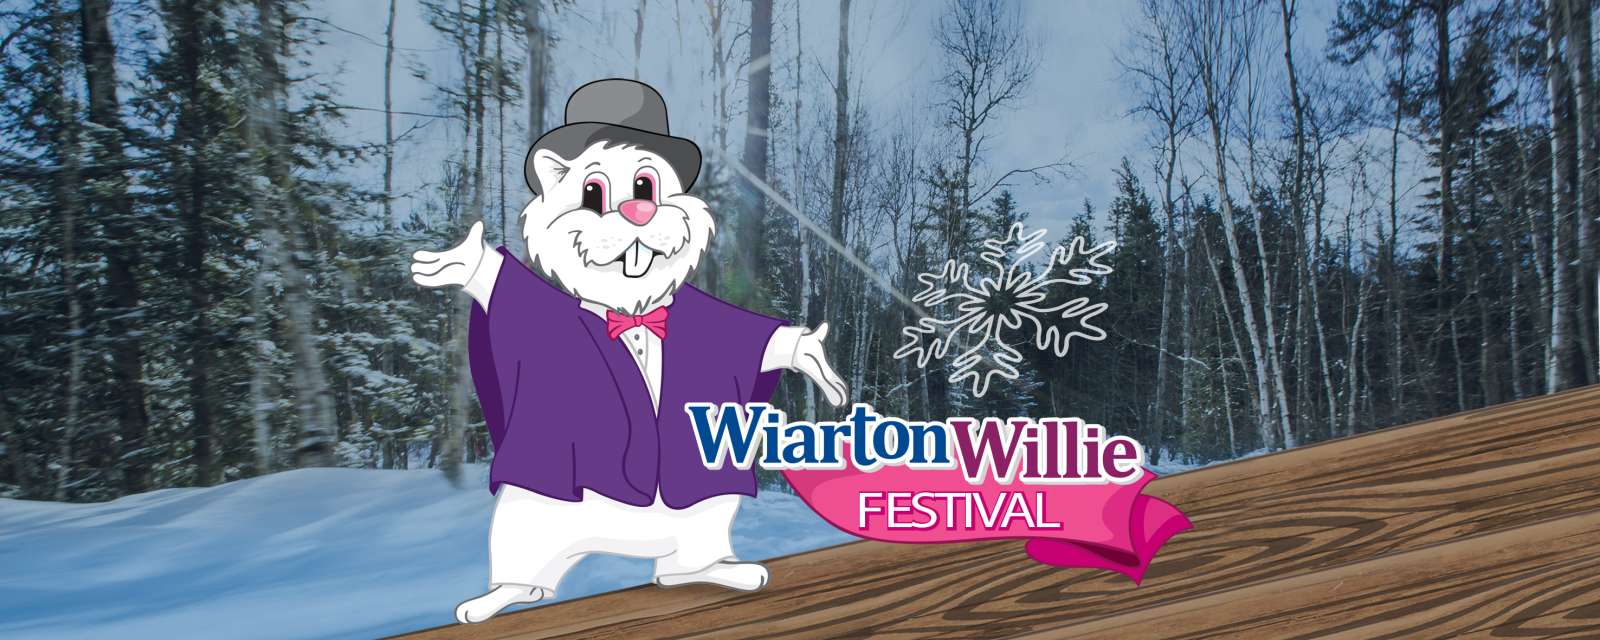 Wiarton Willie Festival, Wiarton Real Estate, South Bruce Real Estate